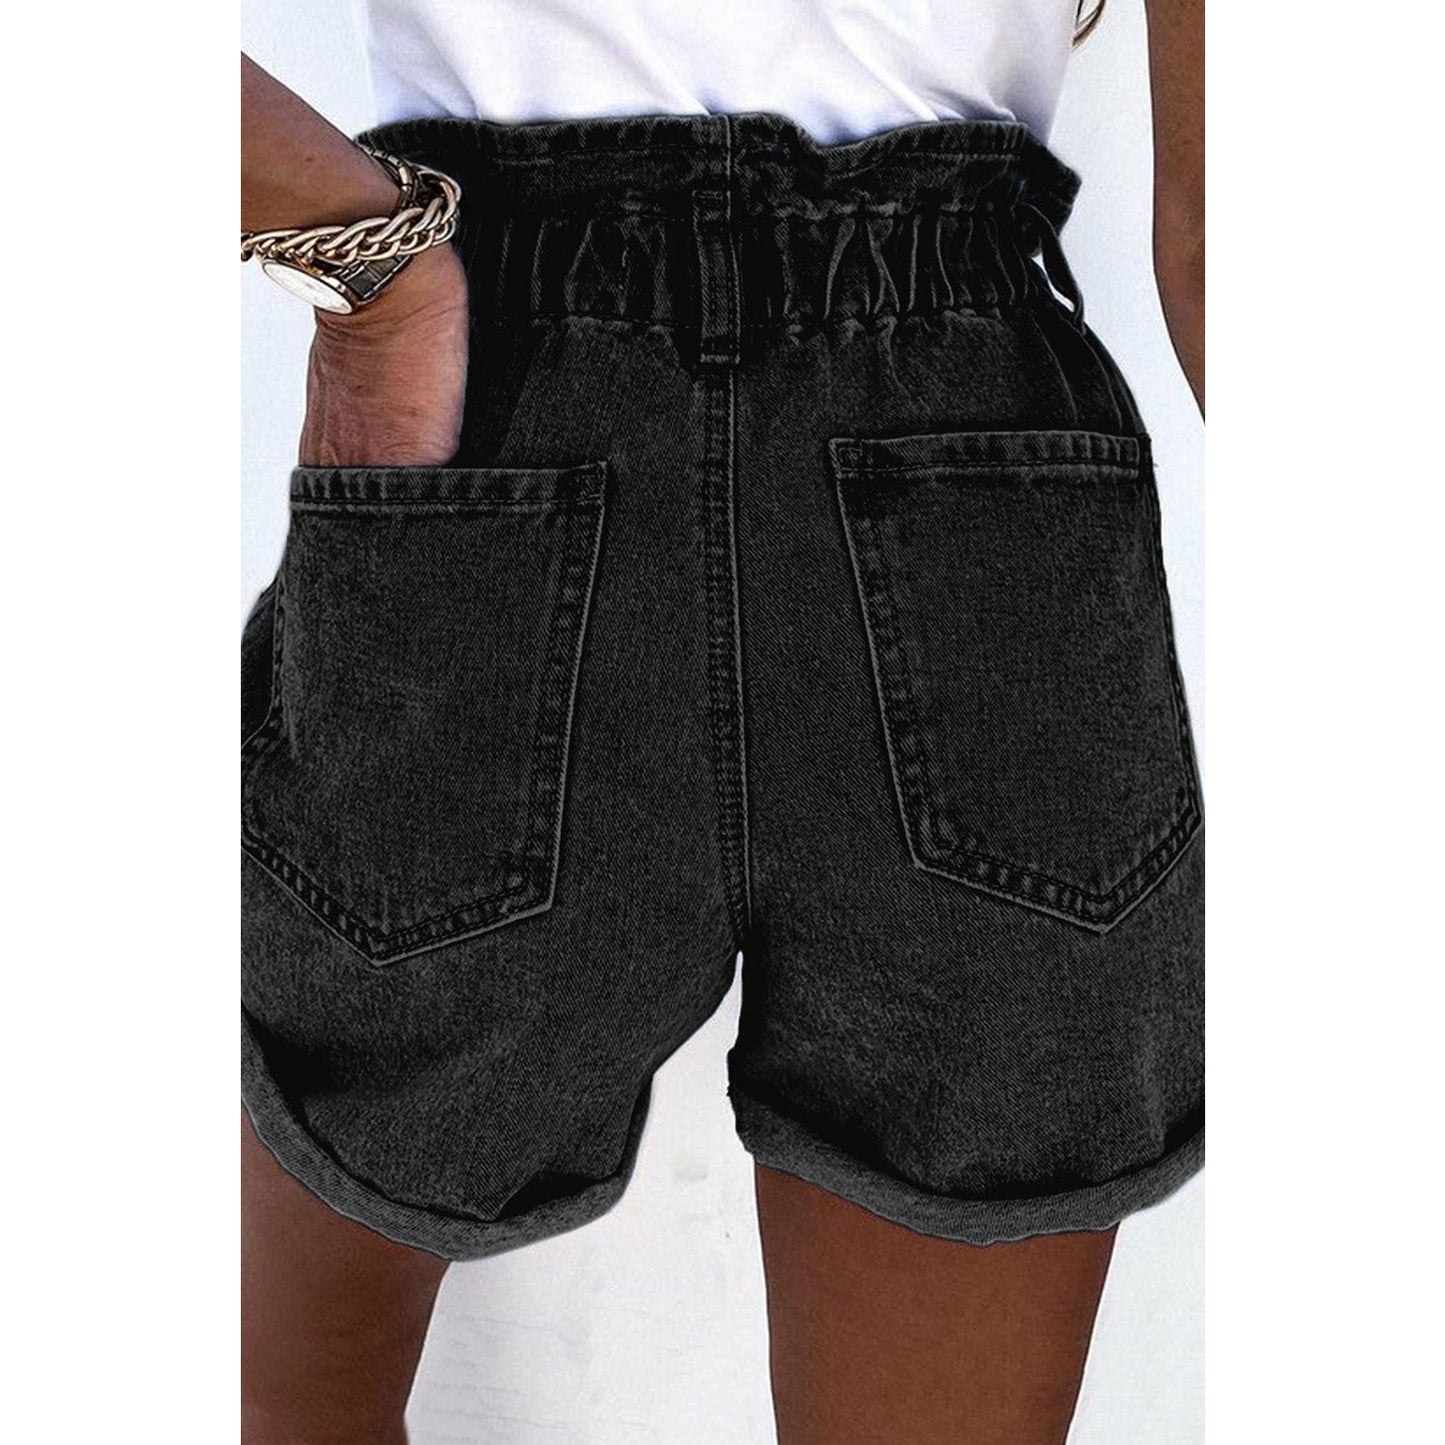 Black Ruffled High Waist Buttoned Denim Shorts